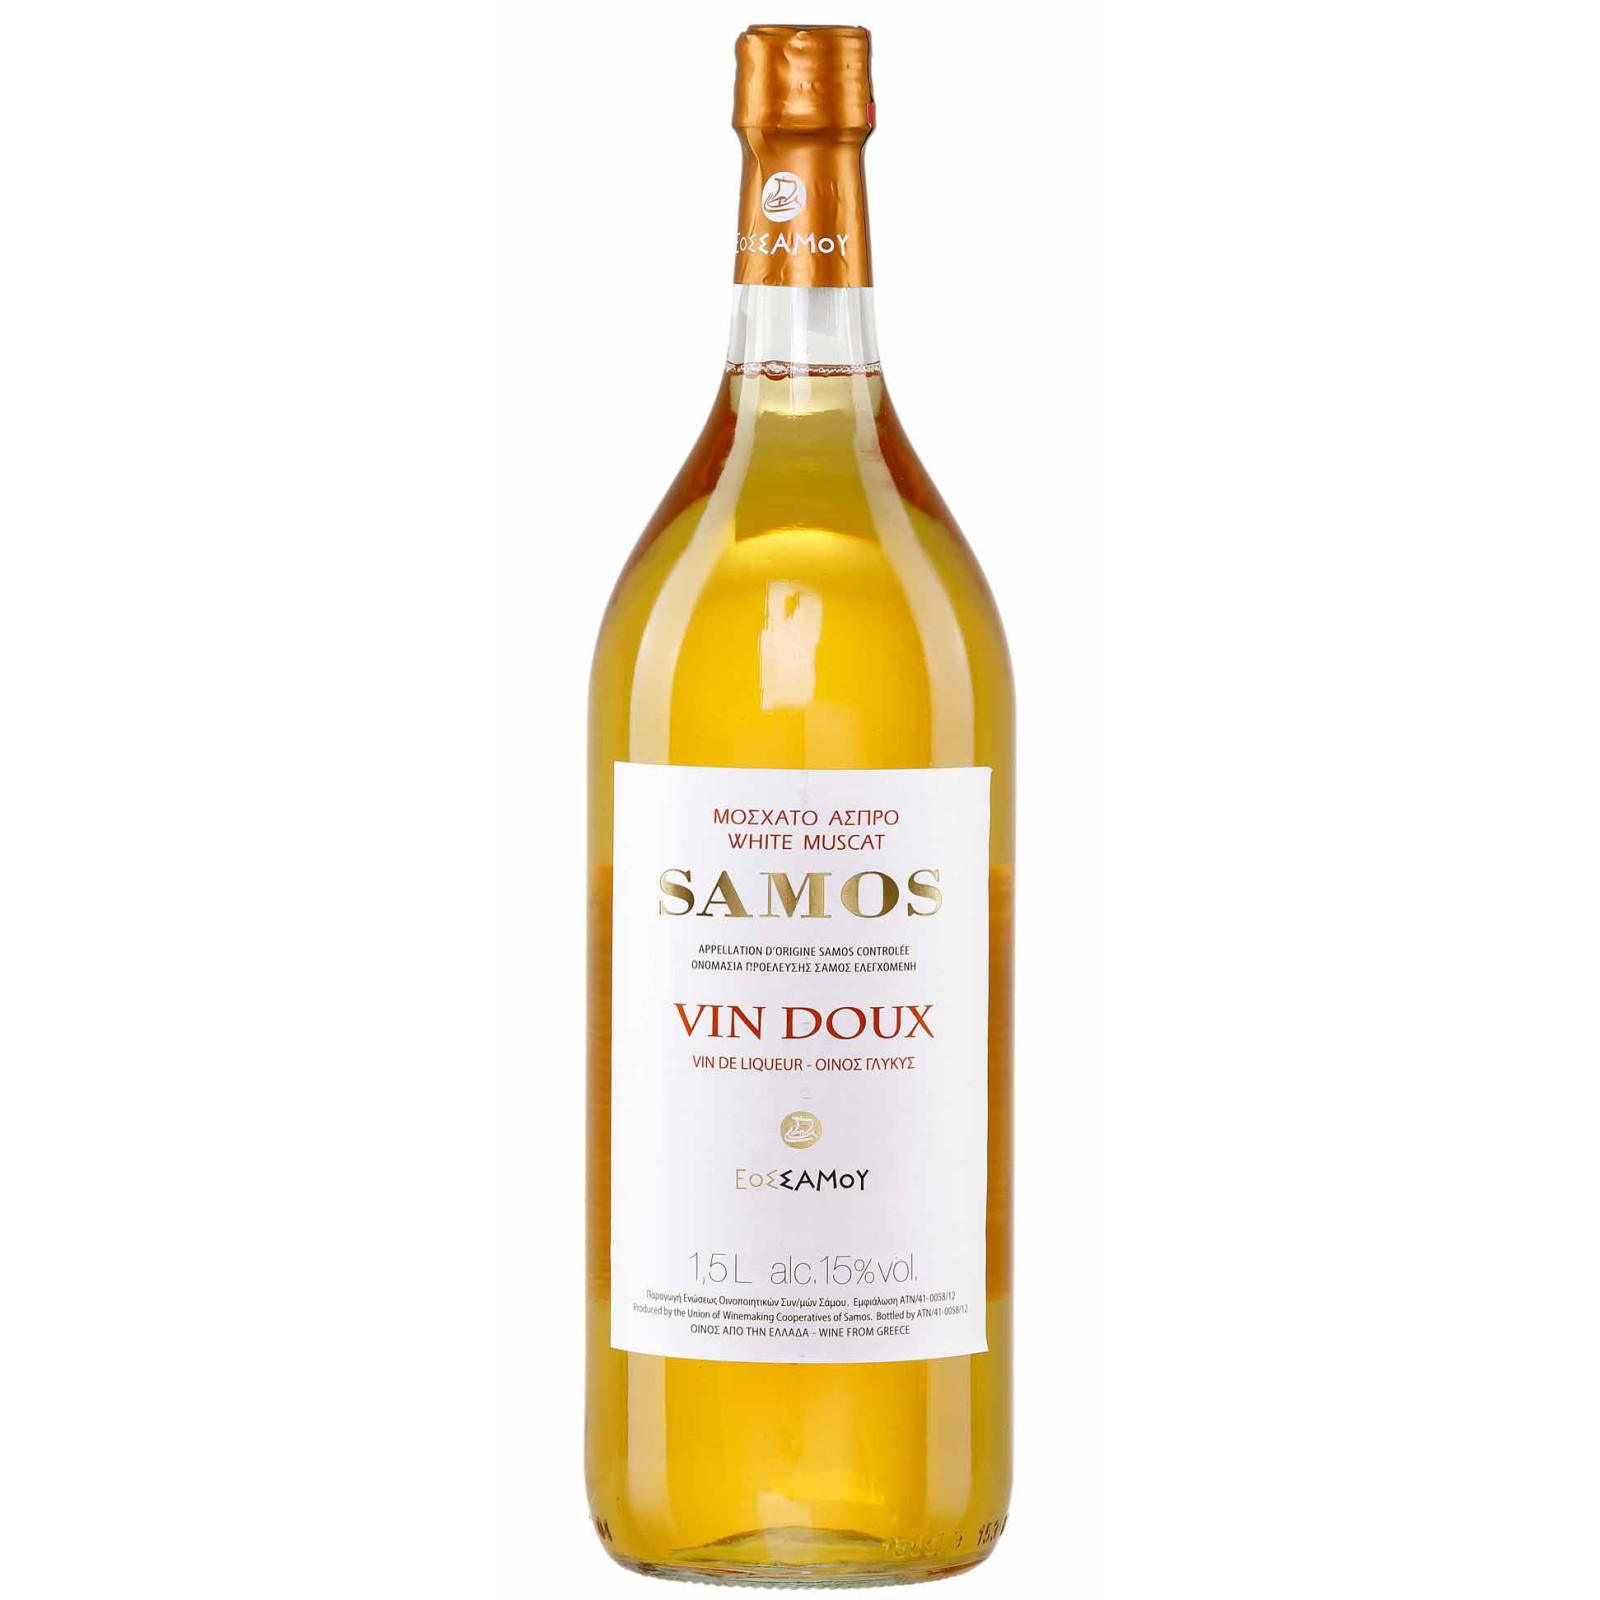 Samos Vin Doux Wein 1,5l bei Jassas kaufen, 15,99 €